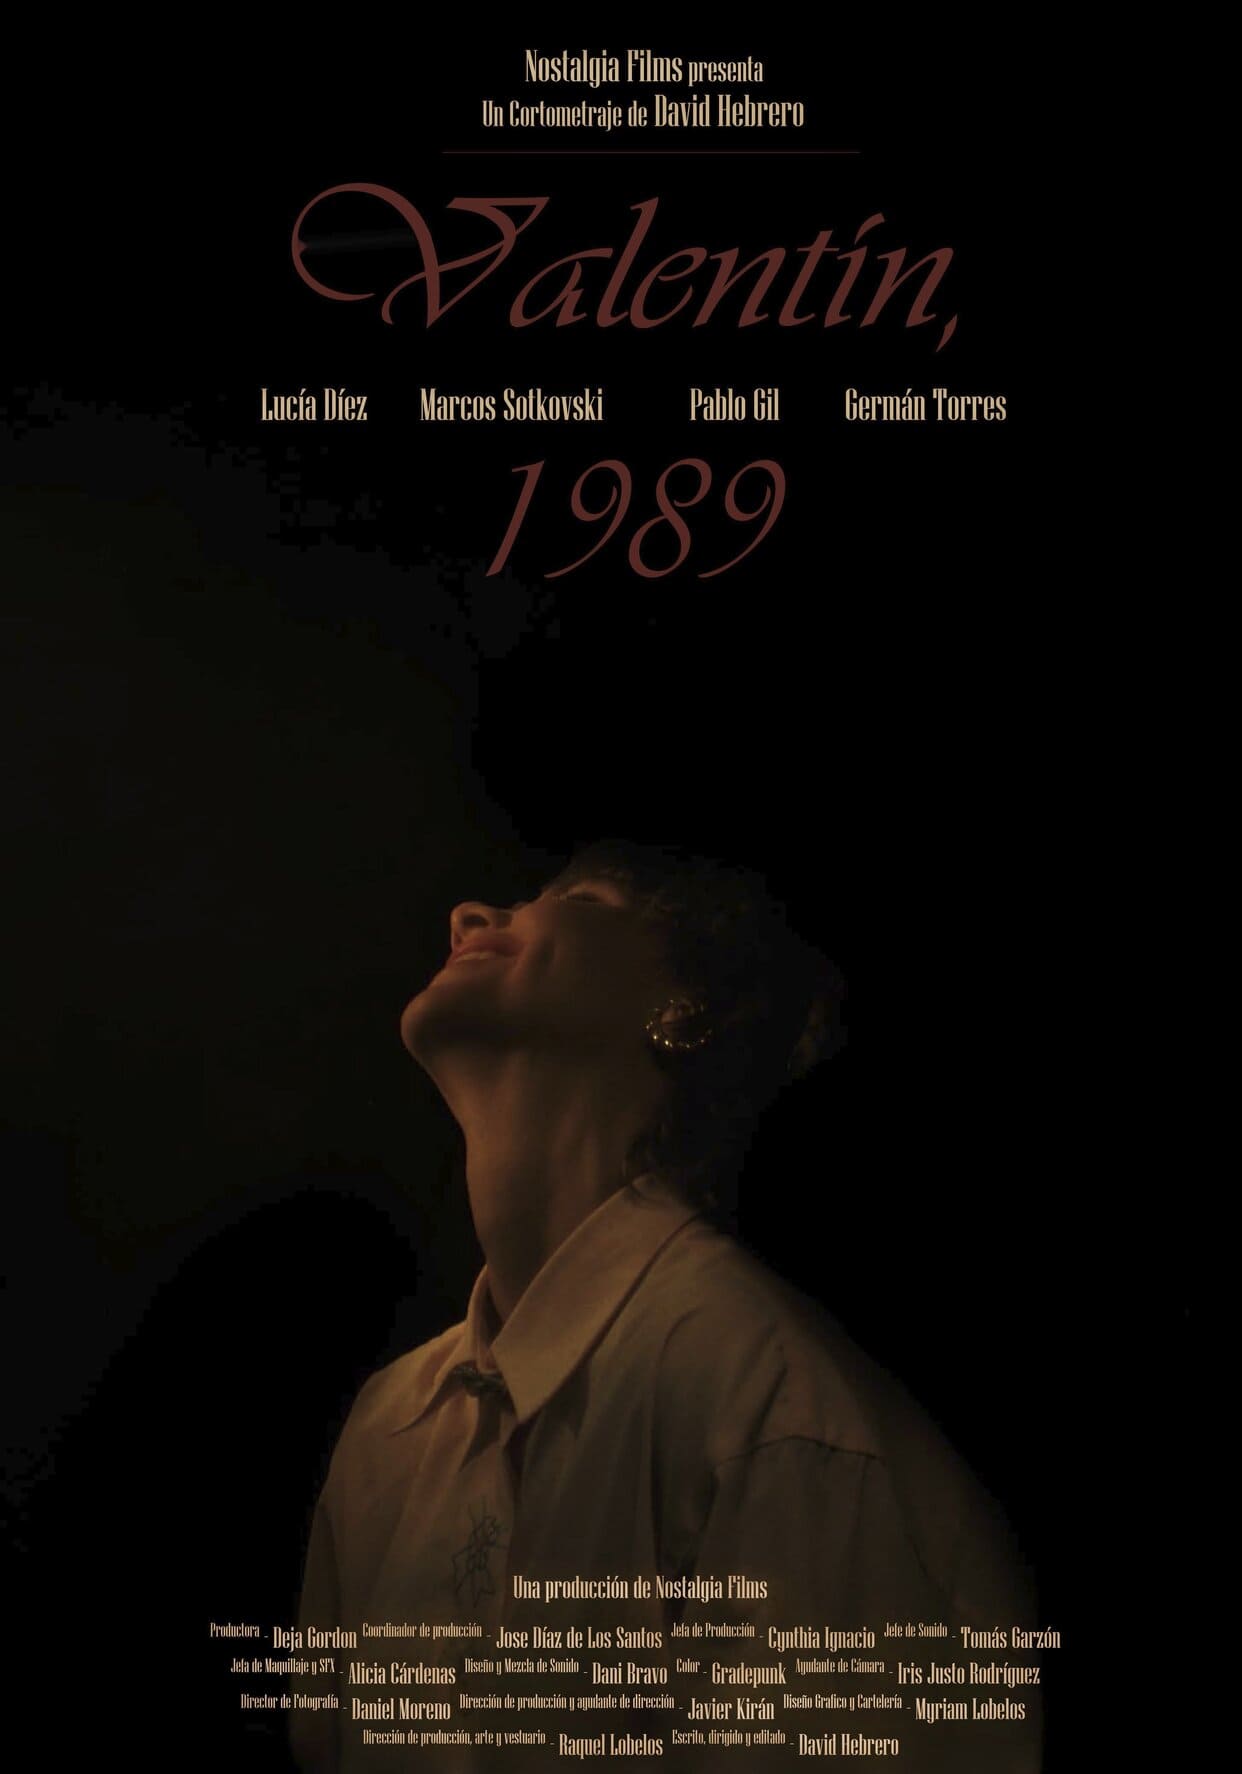 Valentín, 1989